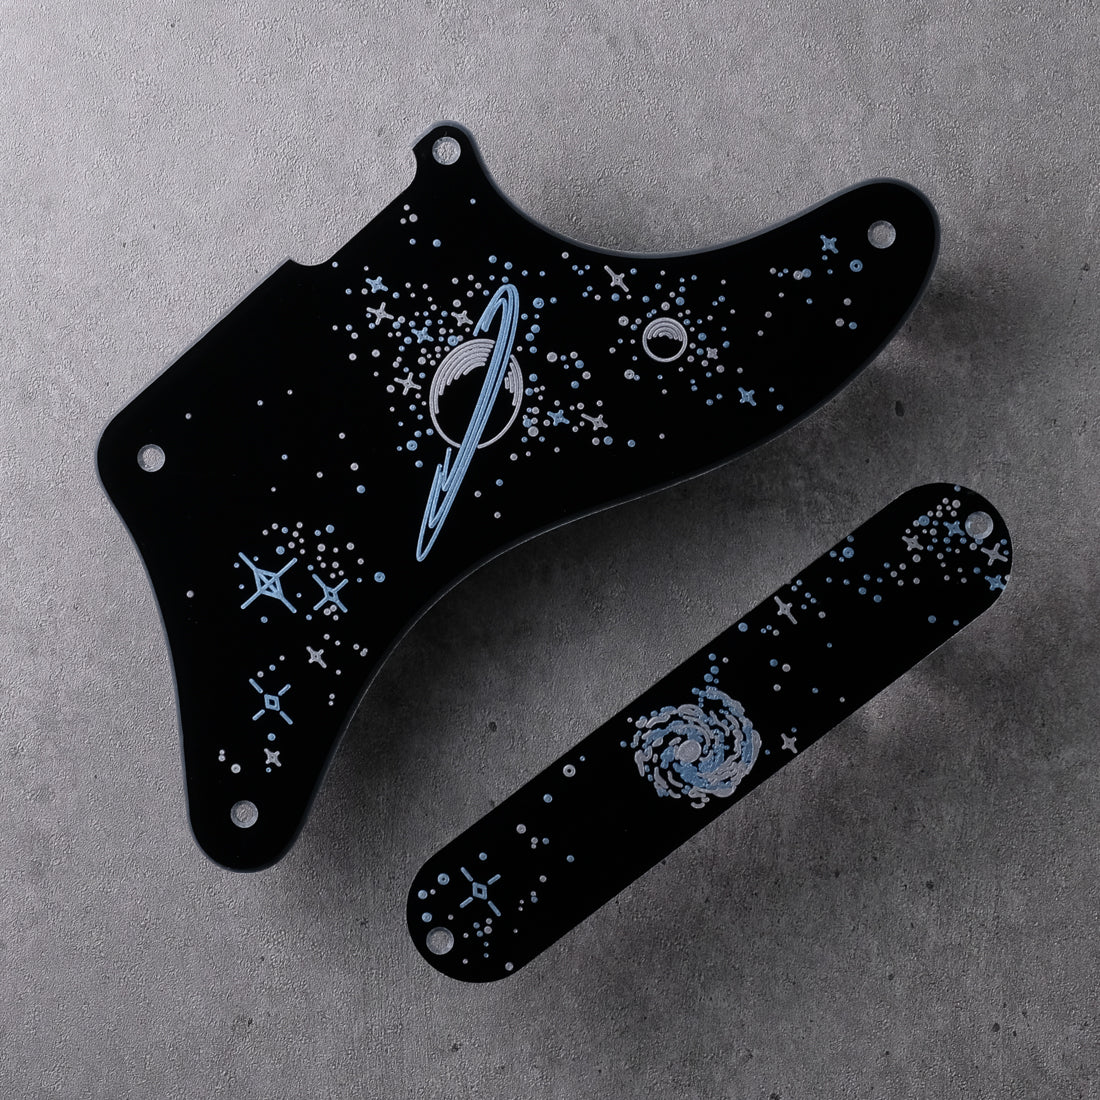 Space Oddity - Cabronita Pickguard - on Black Plexi